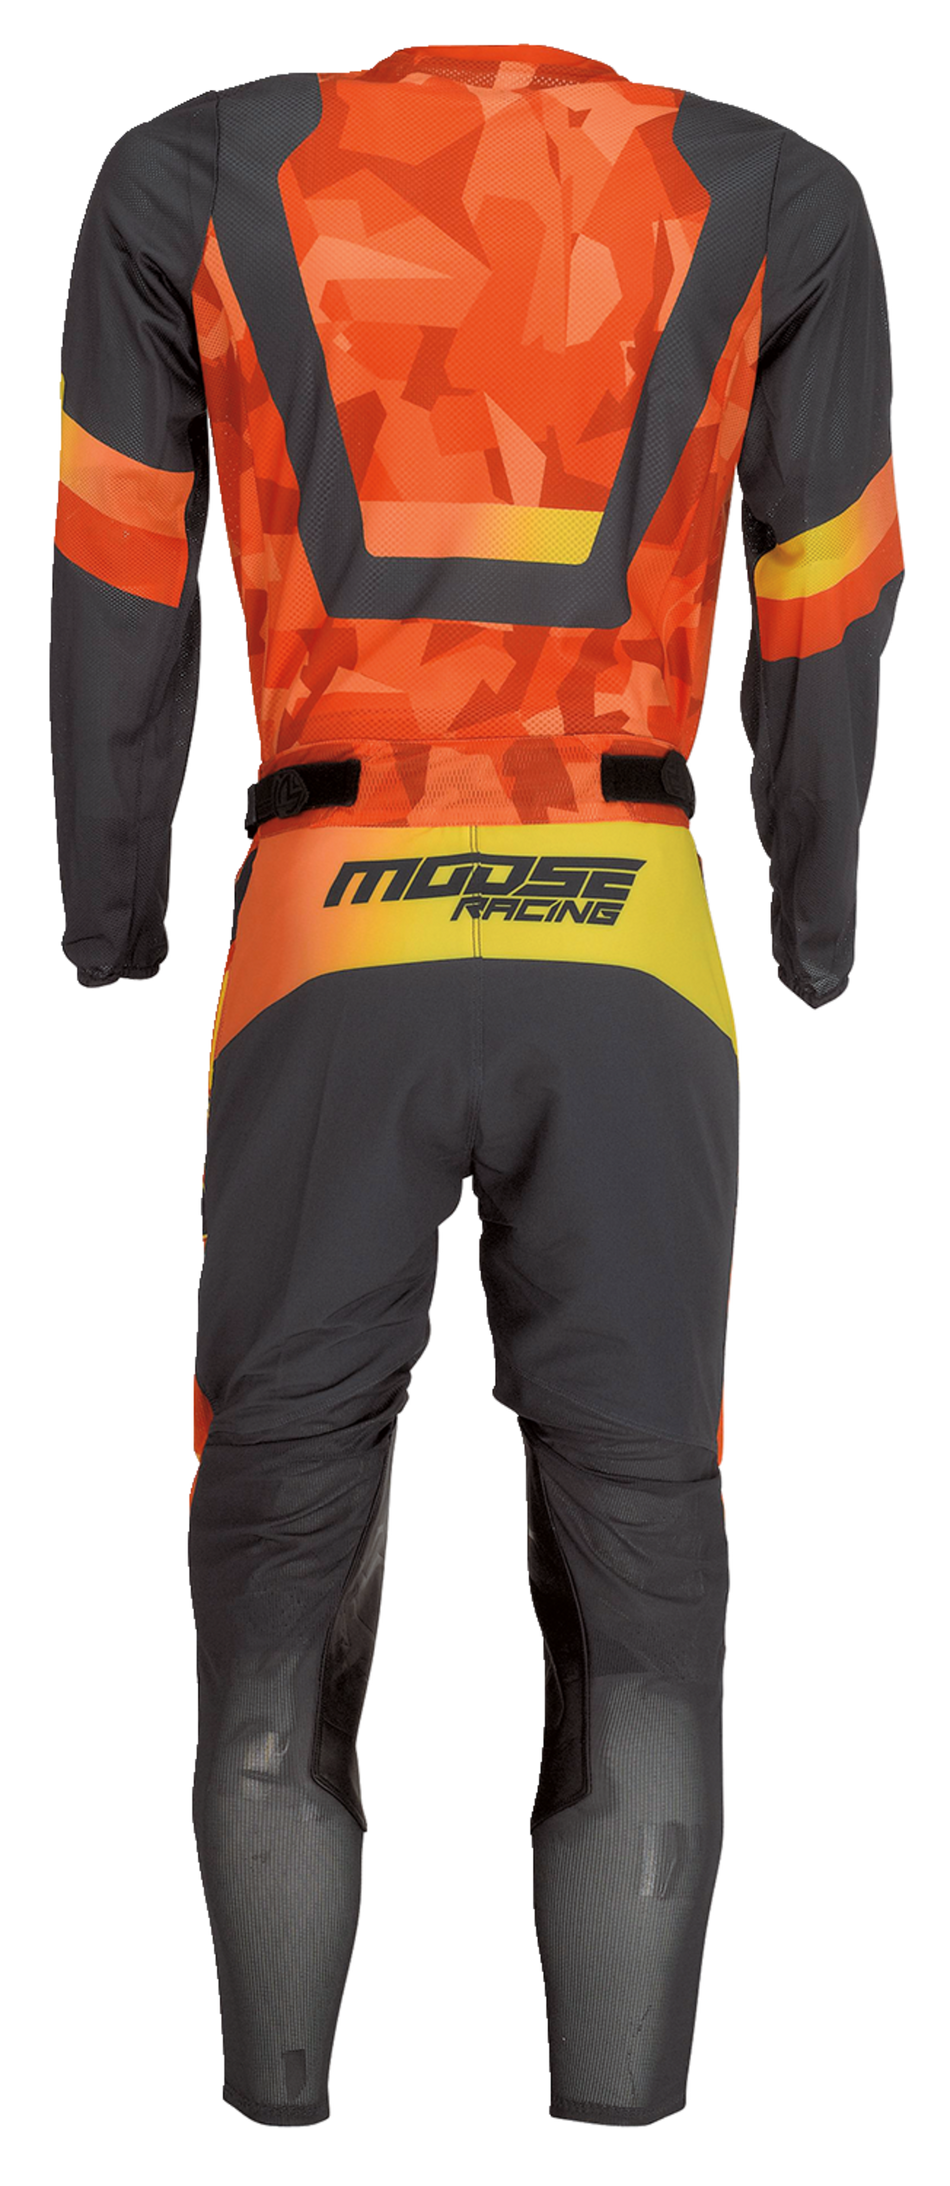 Camiseta MOOSE RACING Sahara™ - Naranja/Negro - Pequeña 2910-7222 